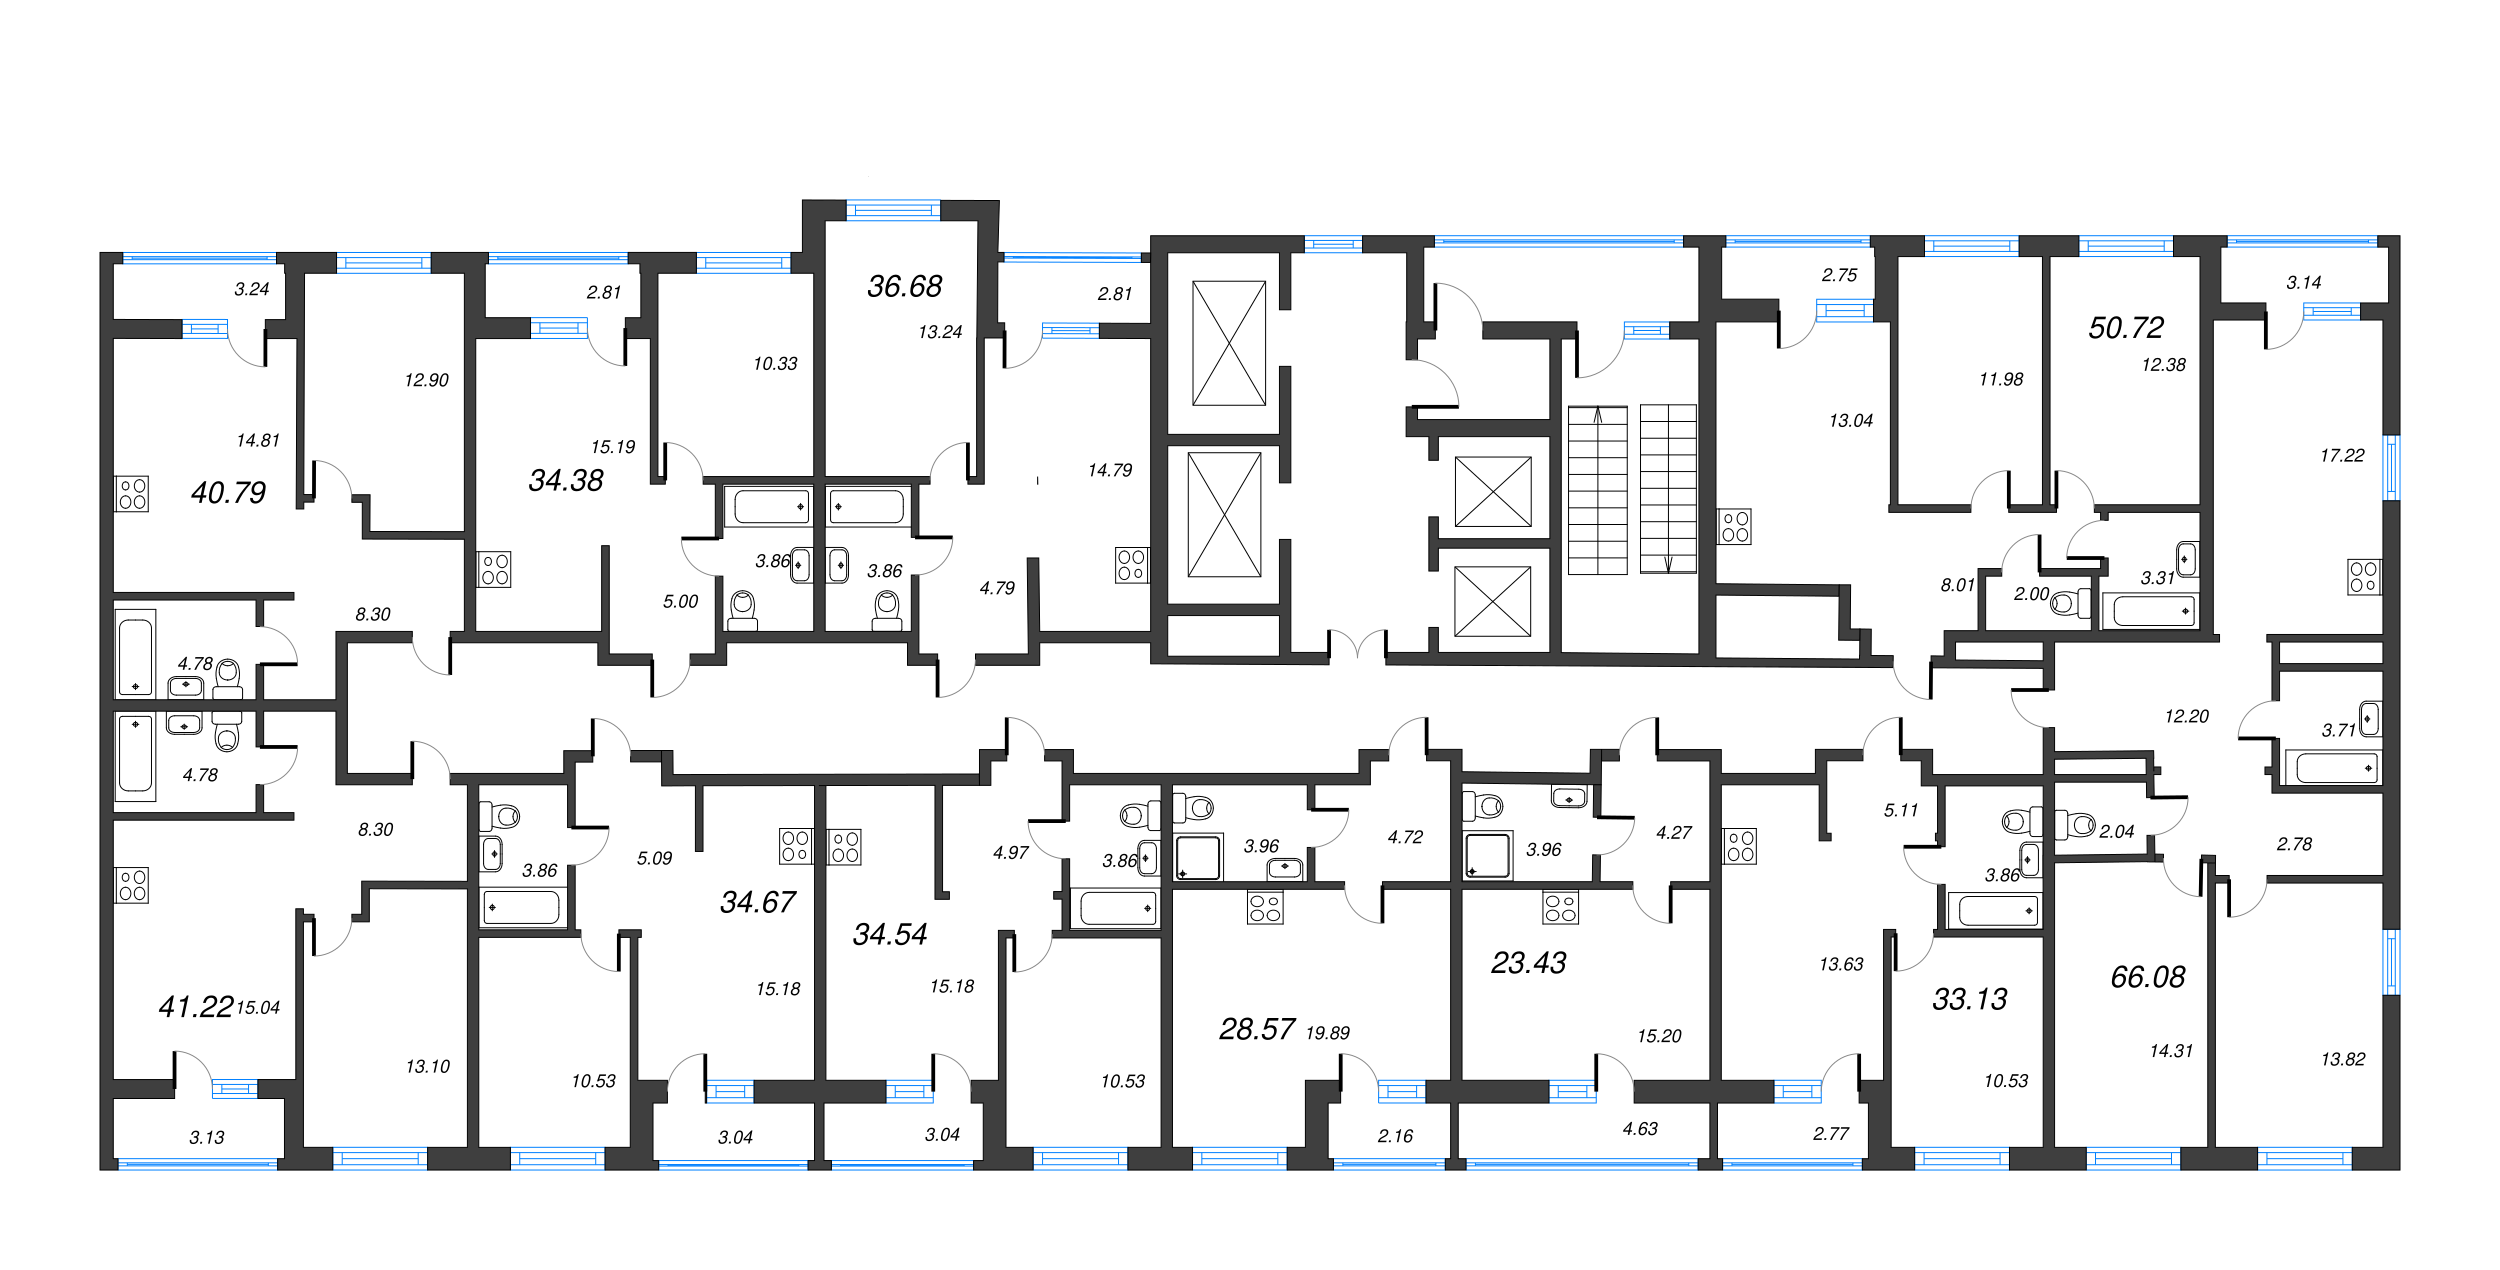 3-комнатная (Евро) квартира, 66.08 м² в ЖК "Город Первых" - планировка этажа